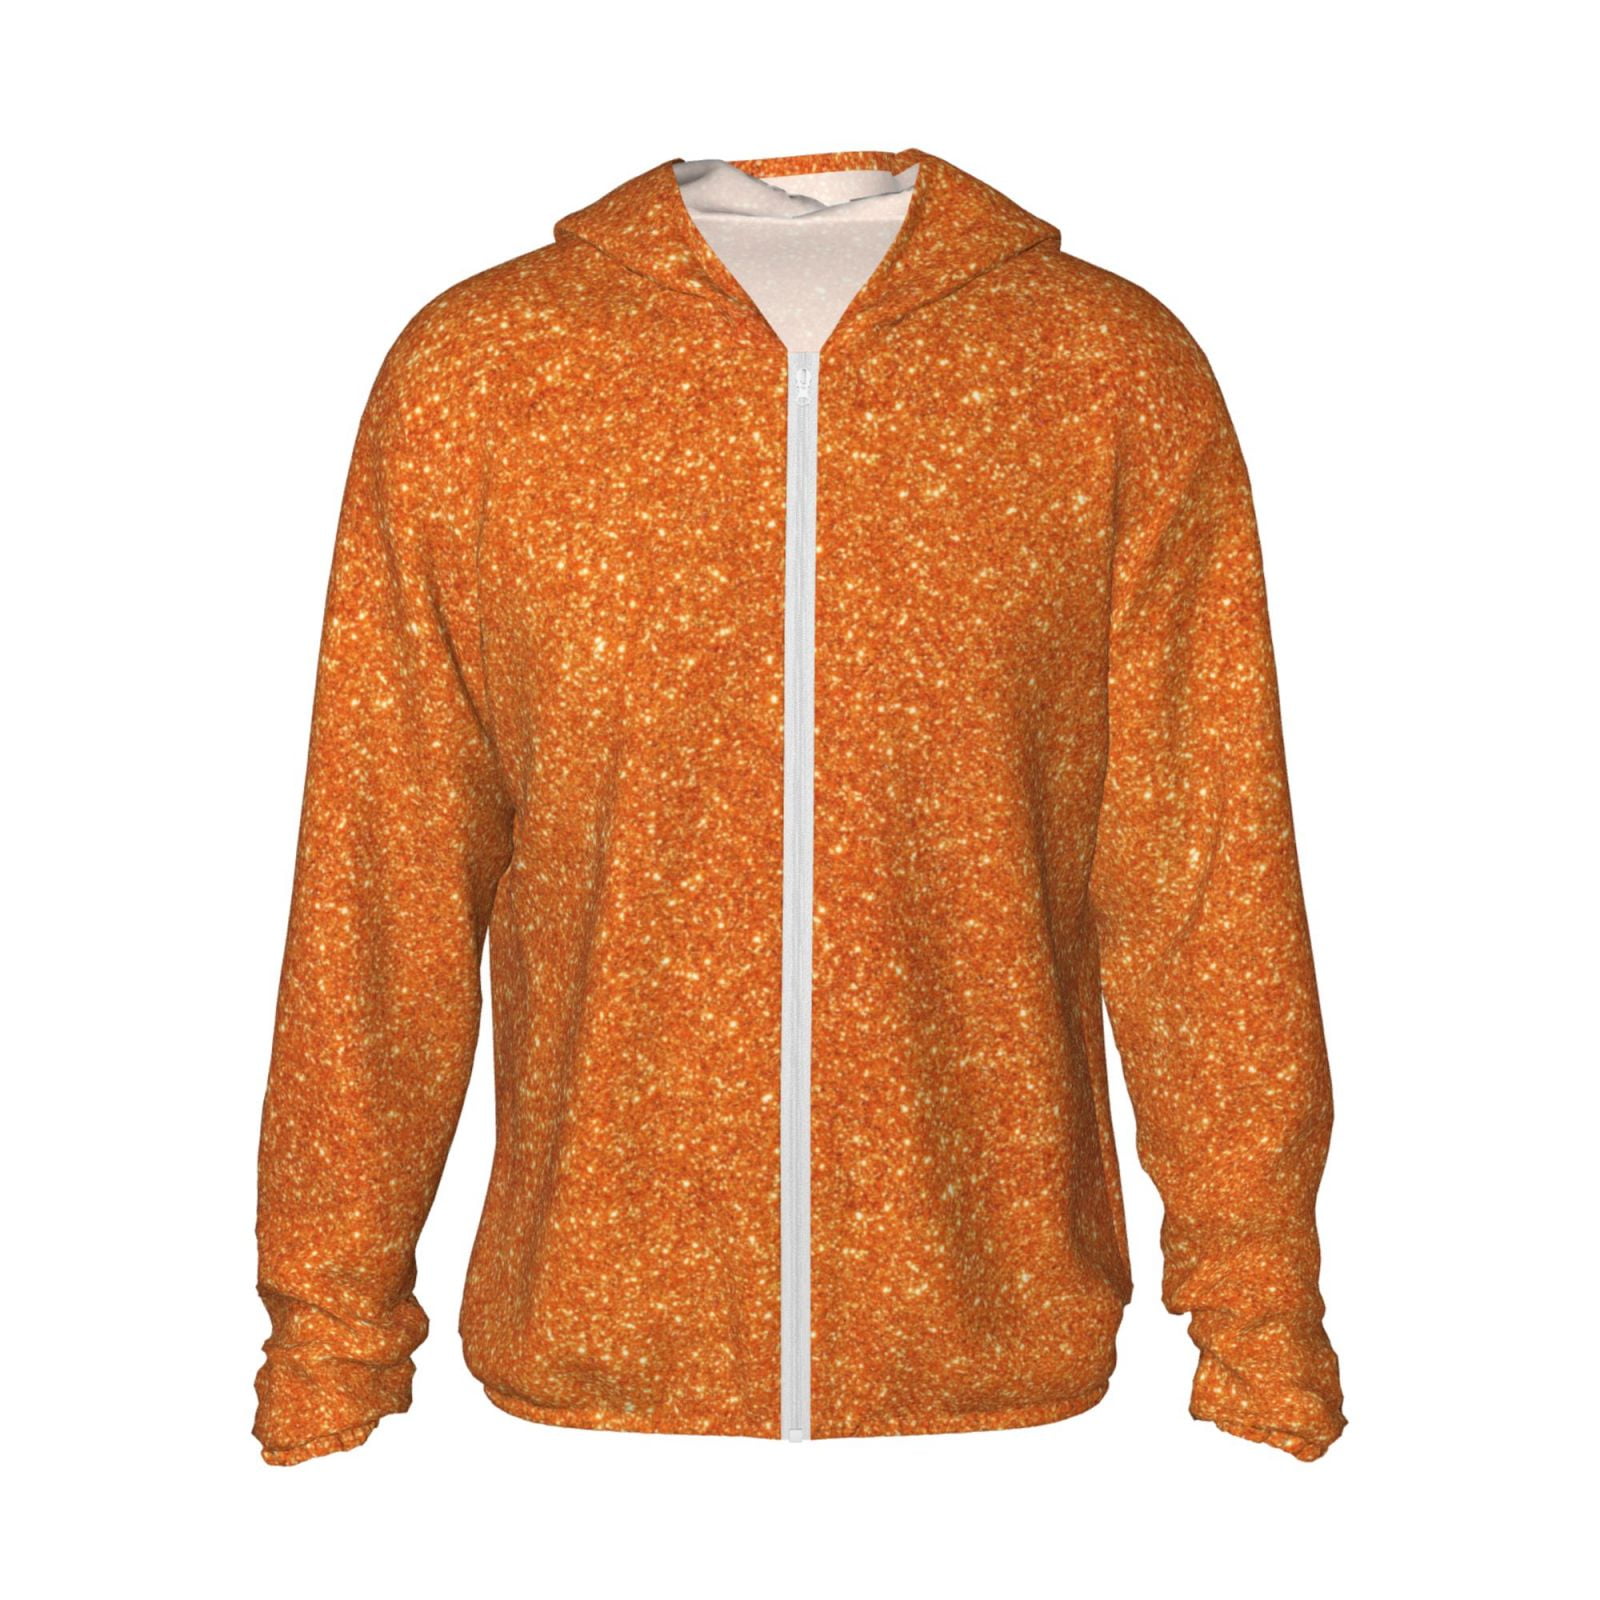 Coaee Orange Glitter Men's and Women's UPF 50+ Sun Protection Hoodie ...